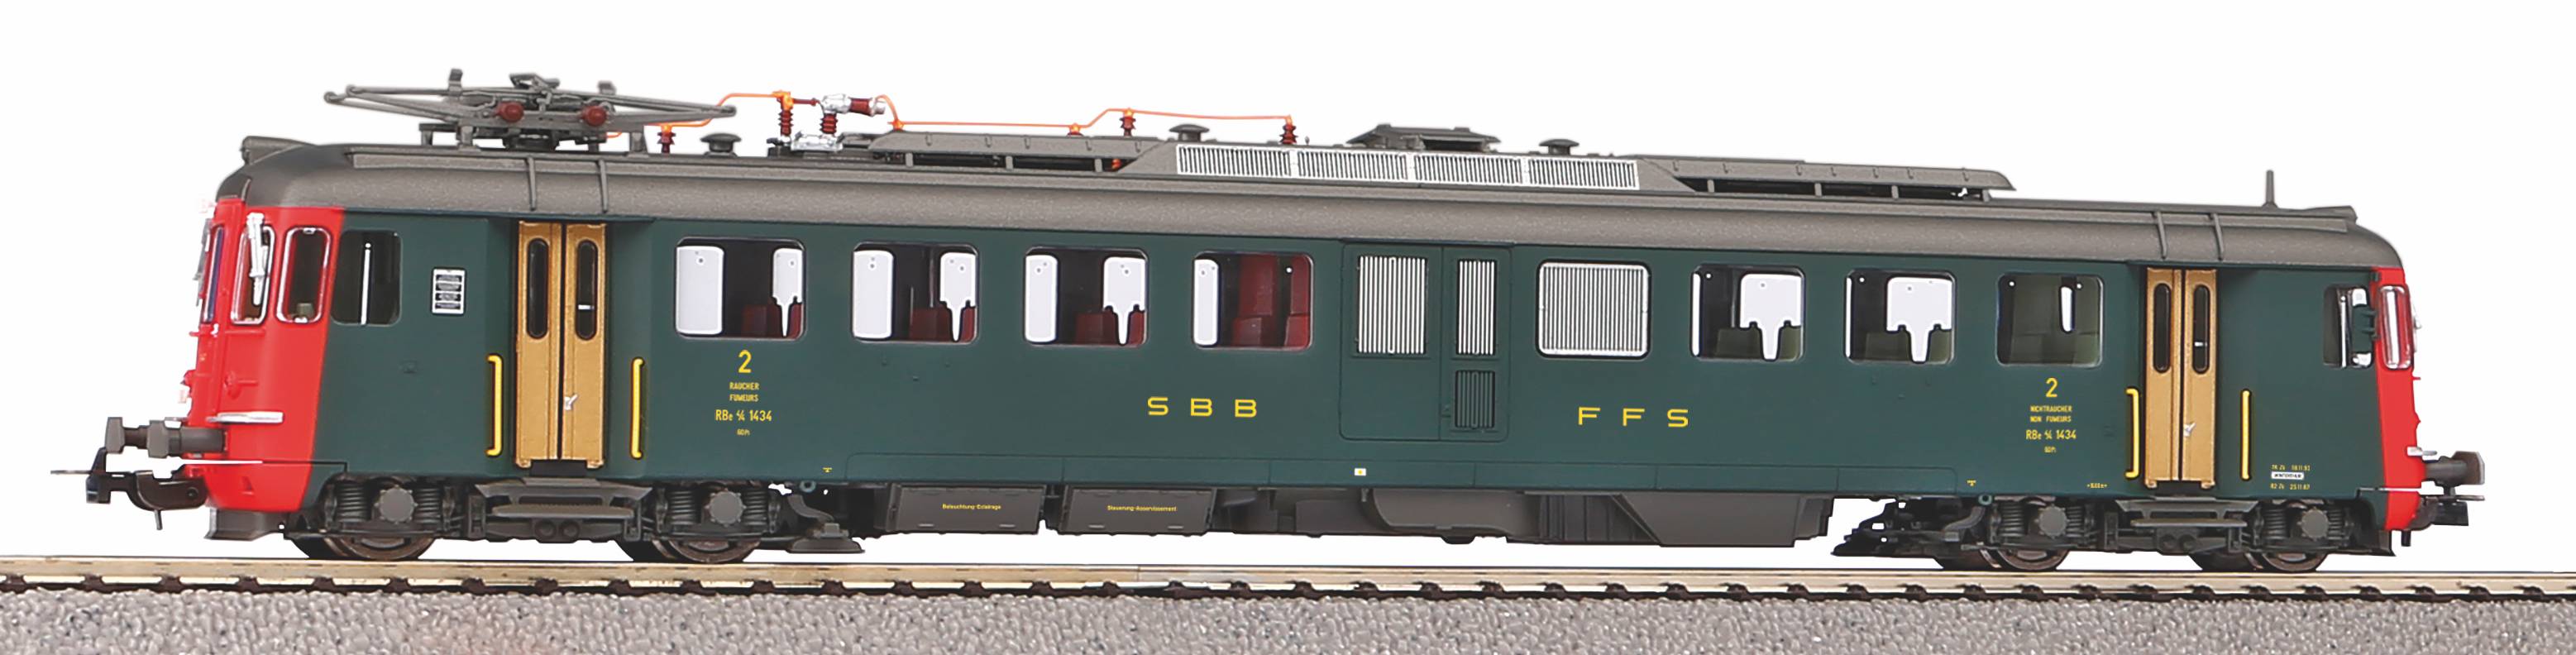 Piko 96823 H0 Triebzug/Sound RBe 4/4 2.Serie grün, alte Schrift SBB IV + PluX22 Dec.